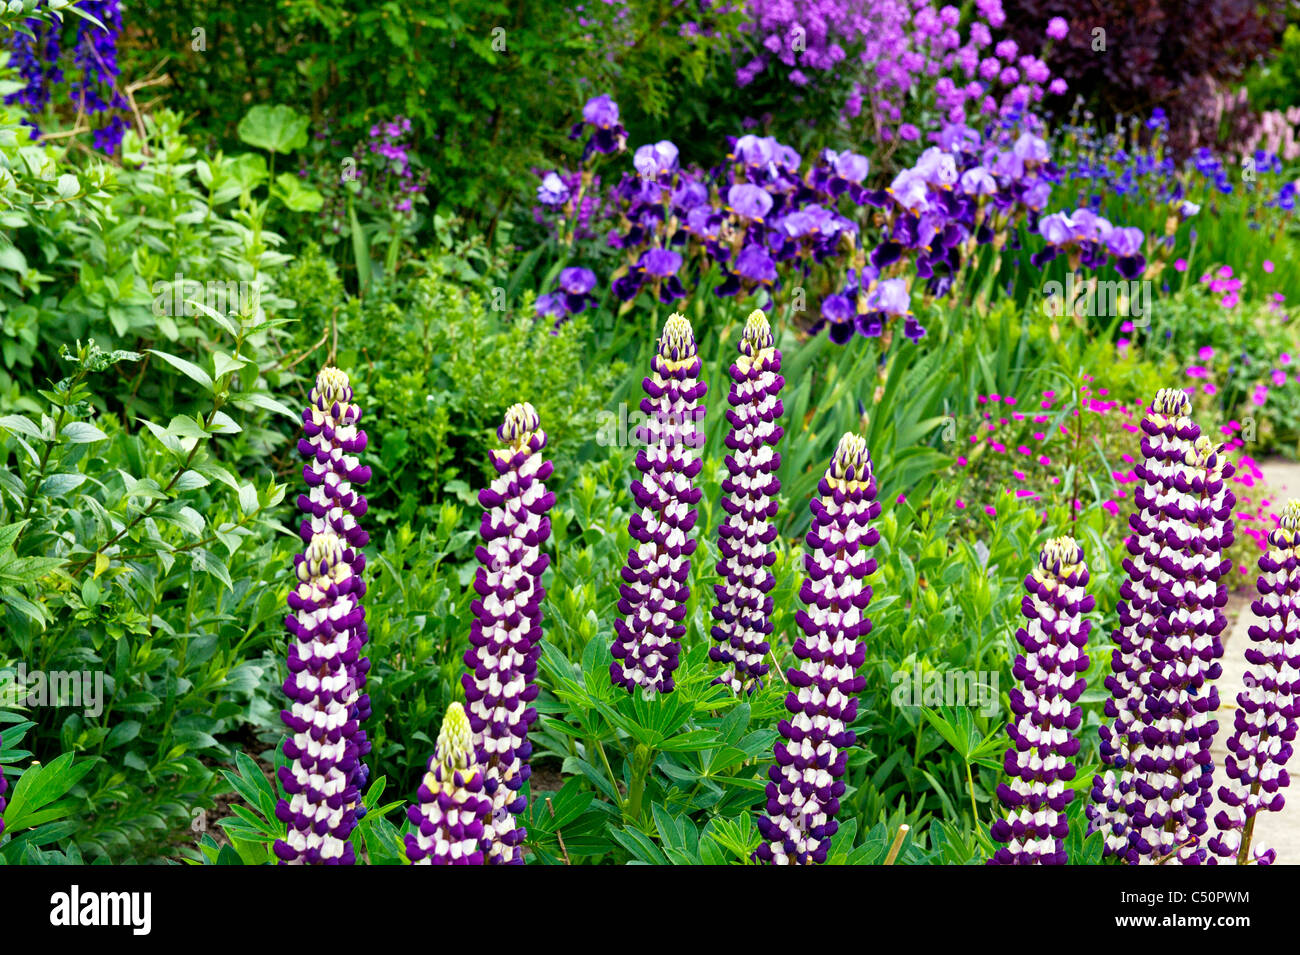 Lupinen und Schwertlilien in einem Beet, Lupines and iris Stock Photo